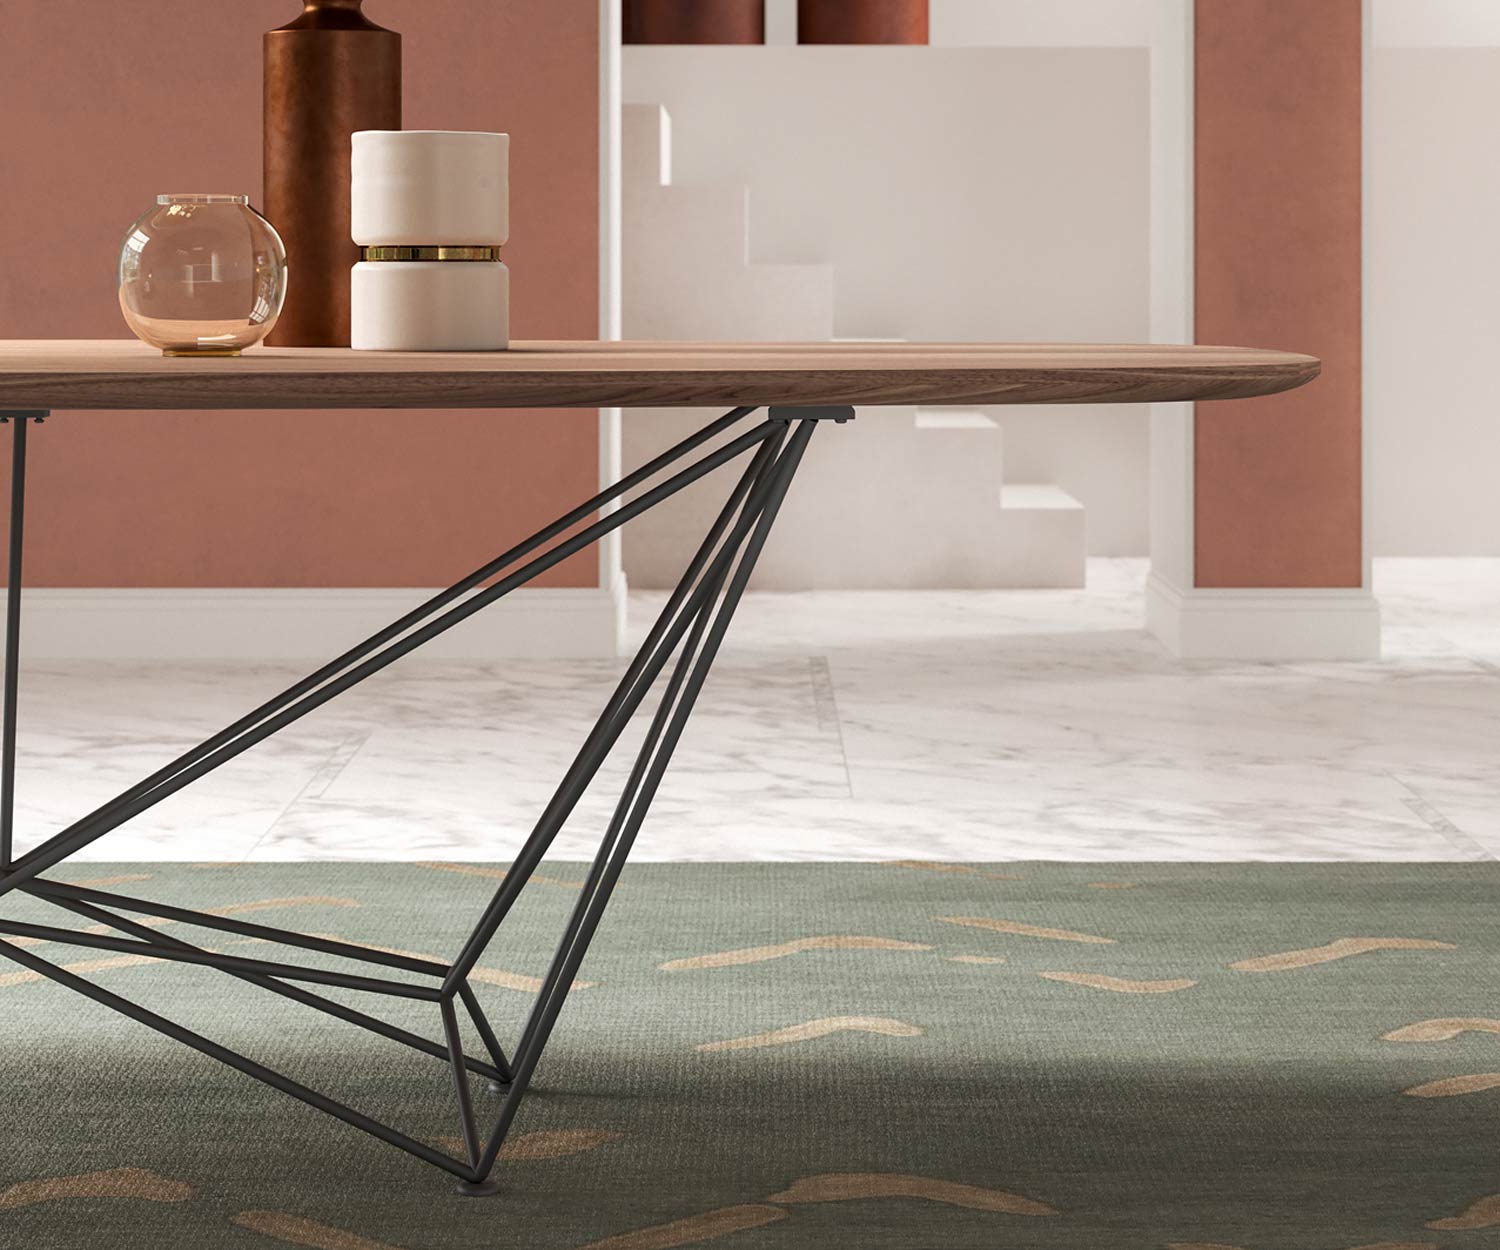 Exklusiver Design Esstisch Detail Tischgestell Stahl Tischplatte Walnuss Furnier